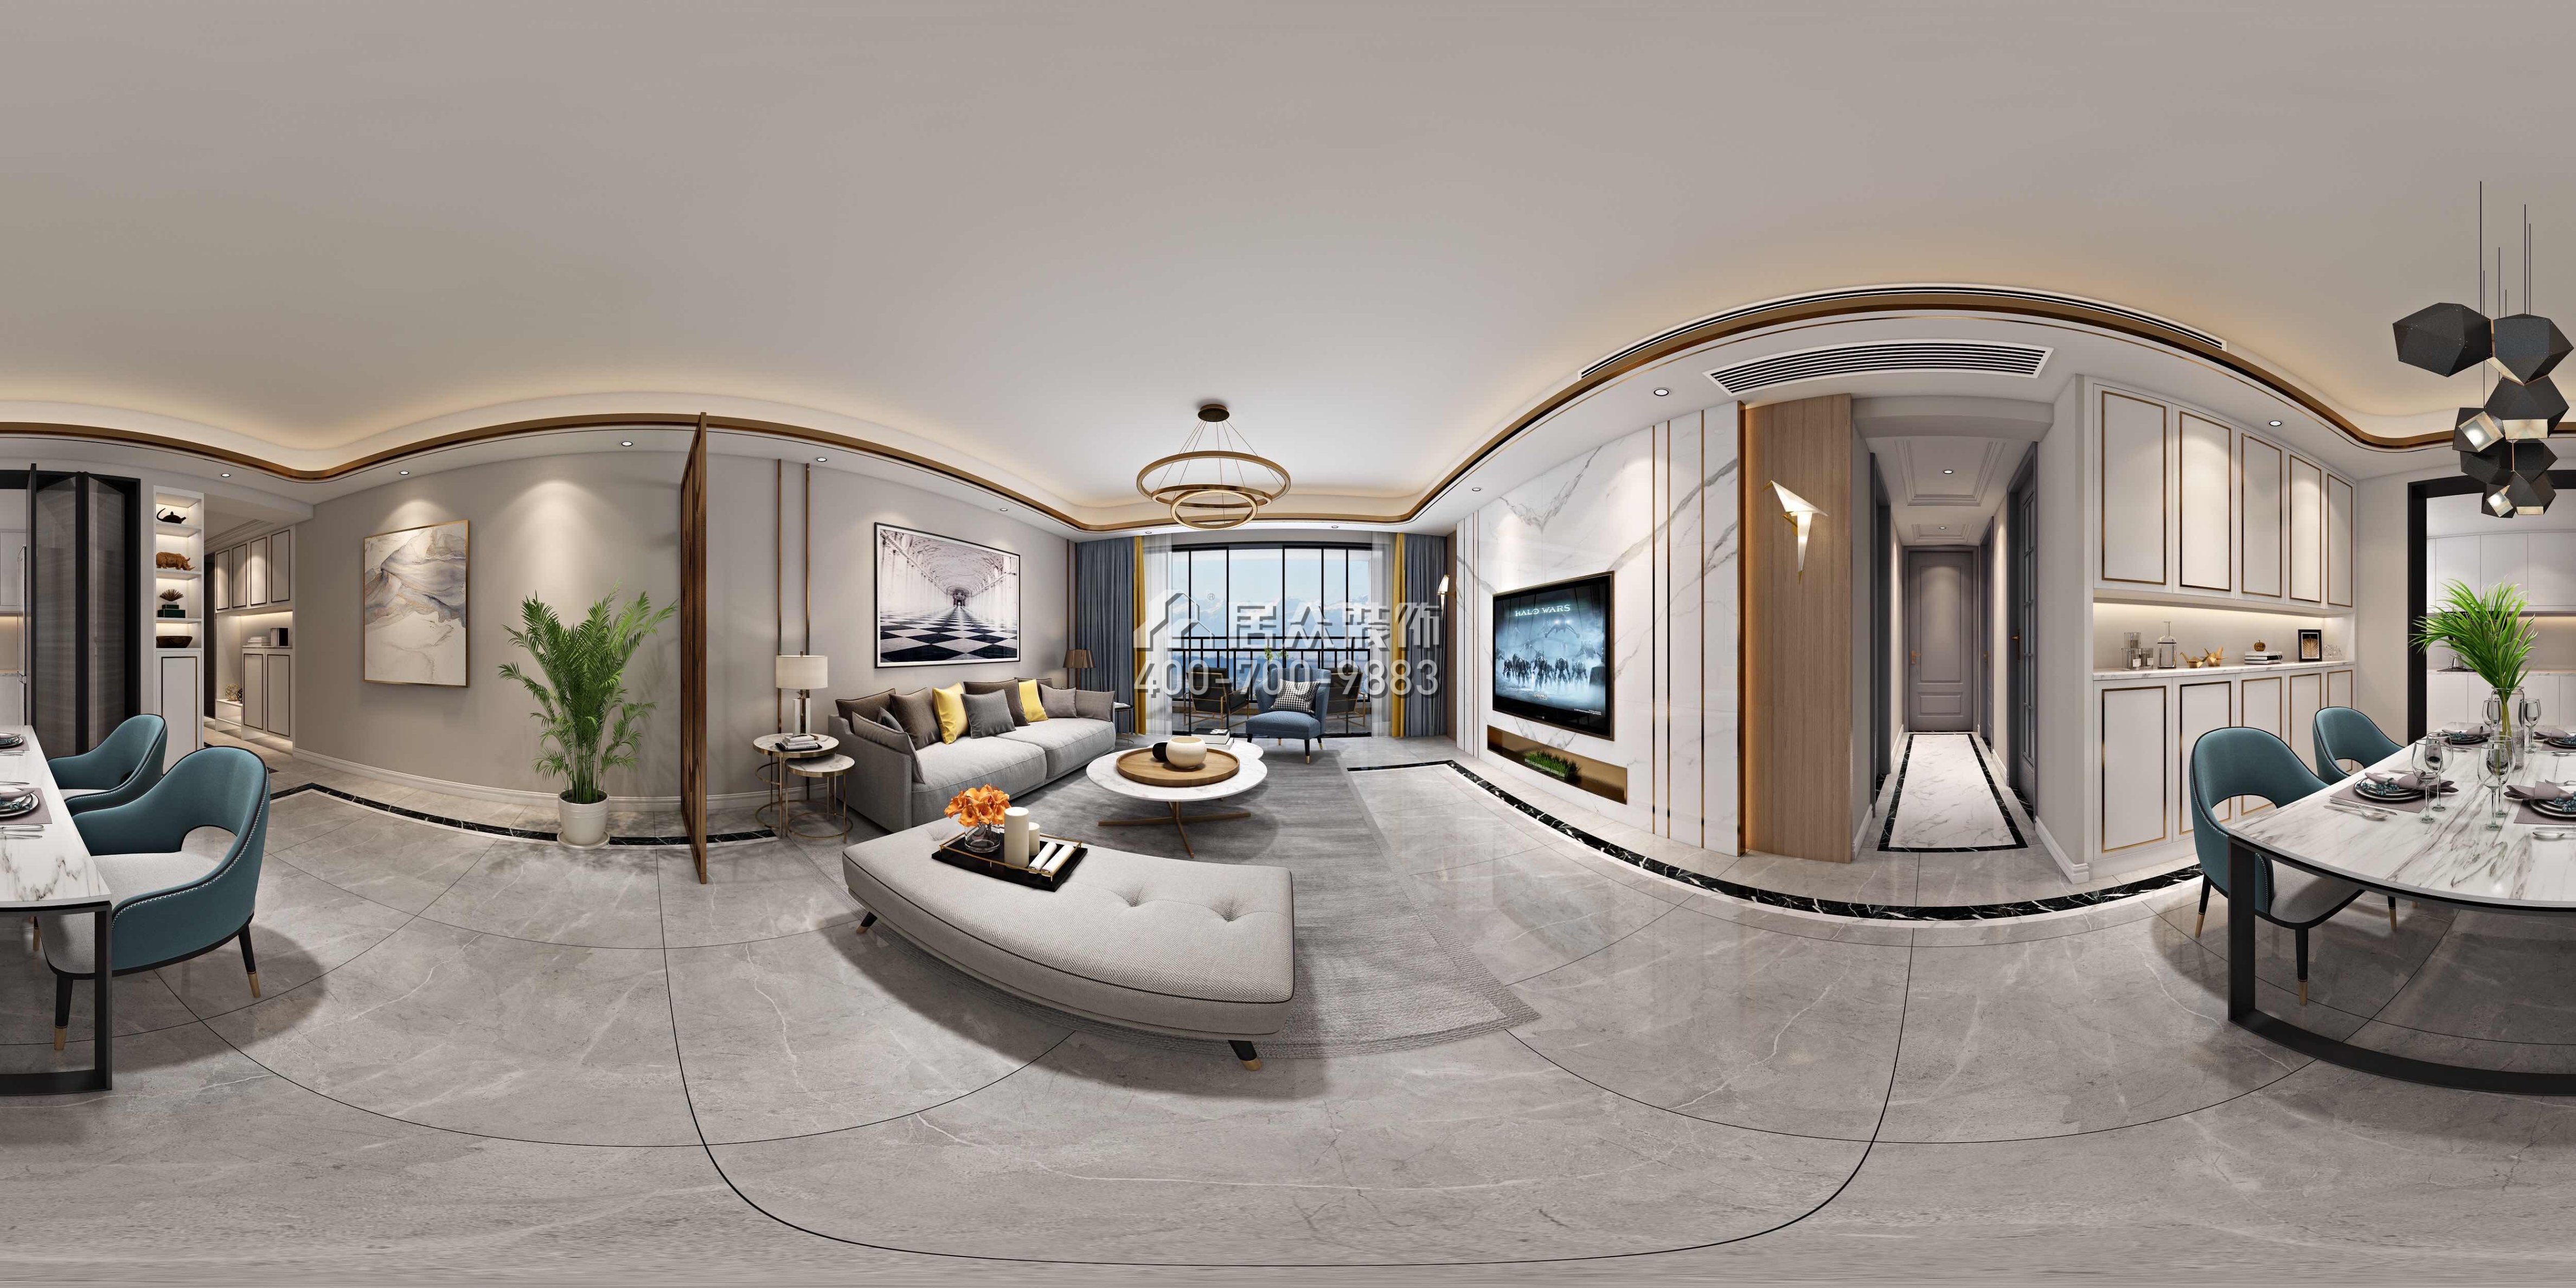 新天鵝堡122平方米現代簡約風格平層戶型客餐廳一體裝修效果圖